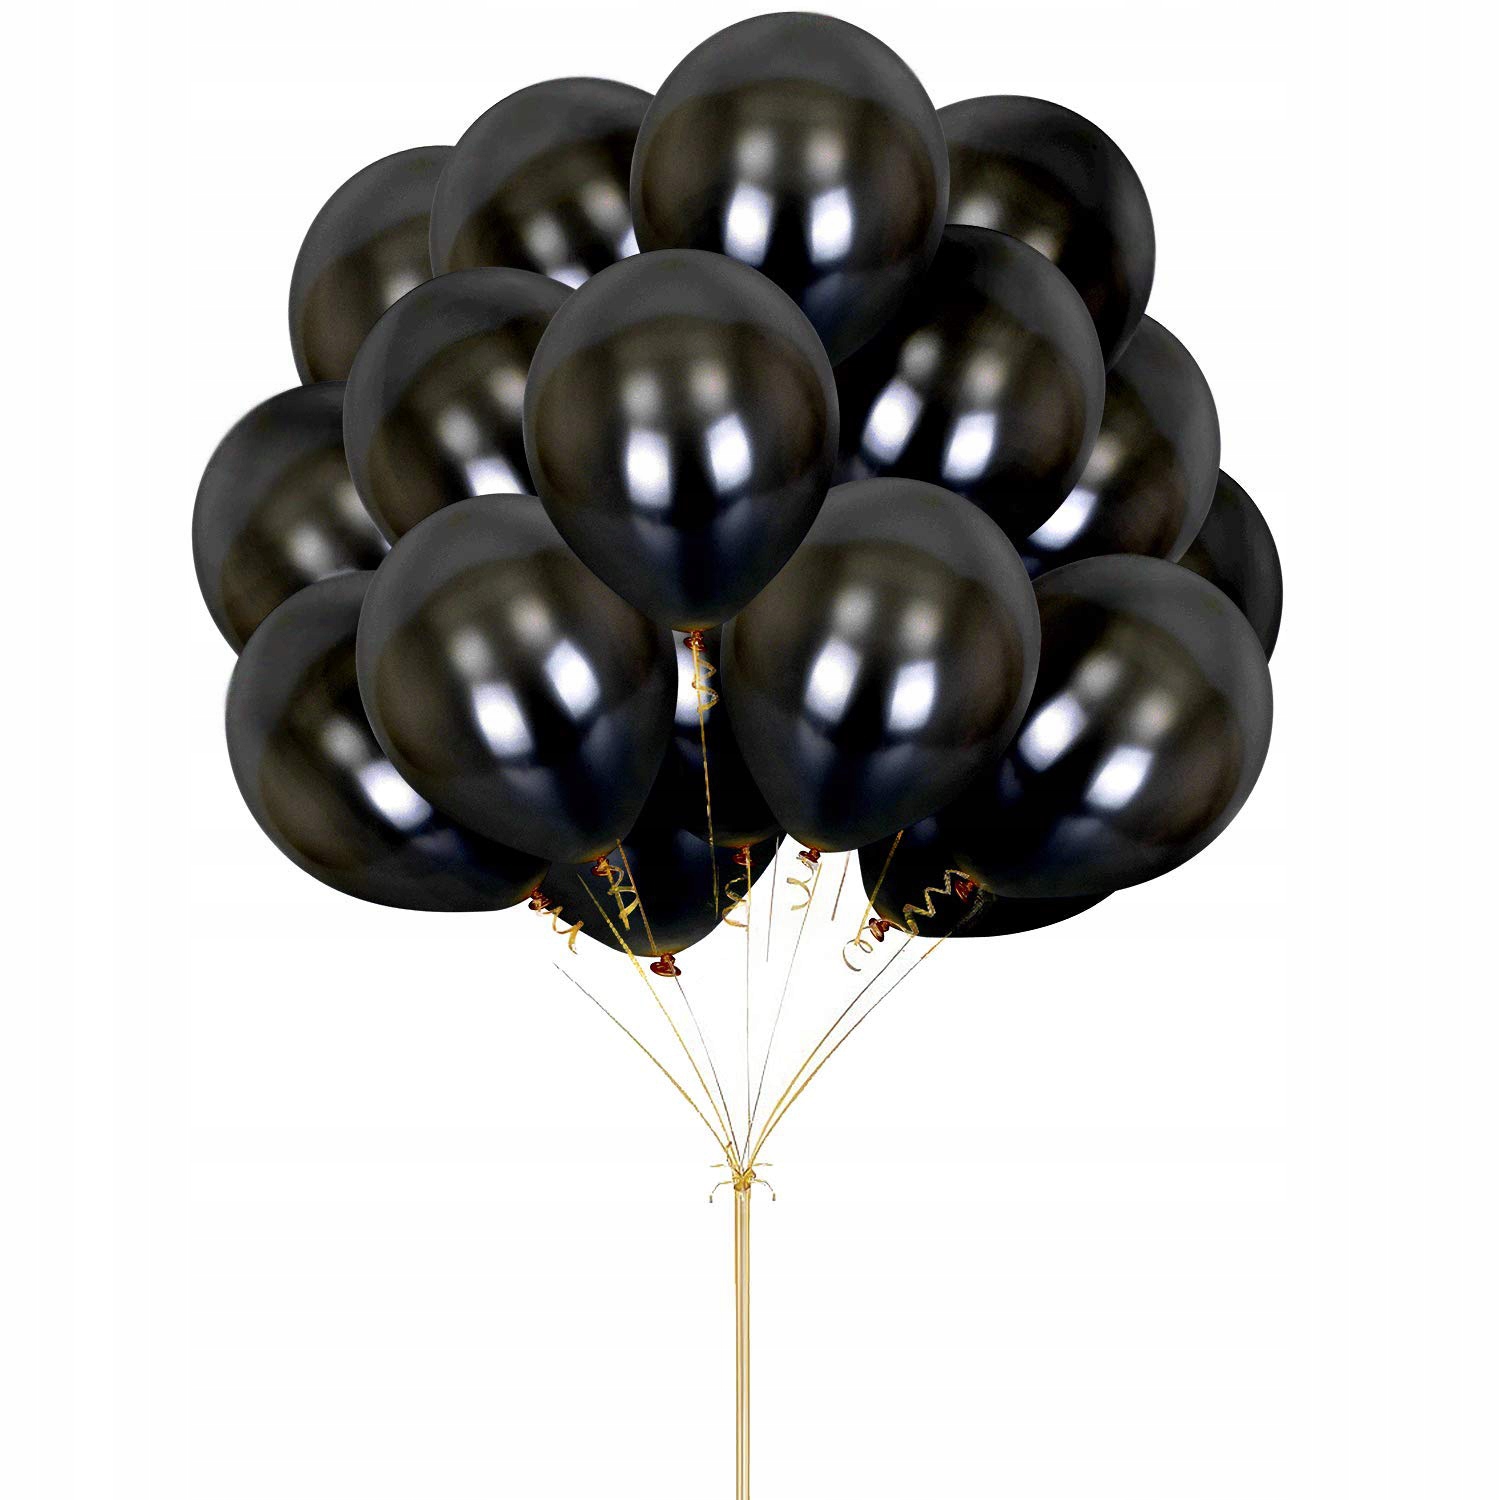 Черный воздушный шарик. “Черный шар” (the Black Balloon), 2008. Черные воздушные шары. Шары надувные черные. Шар черный латексный.